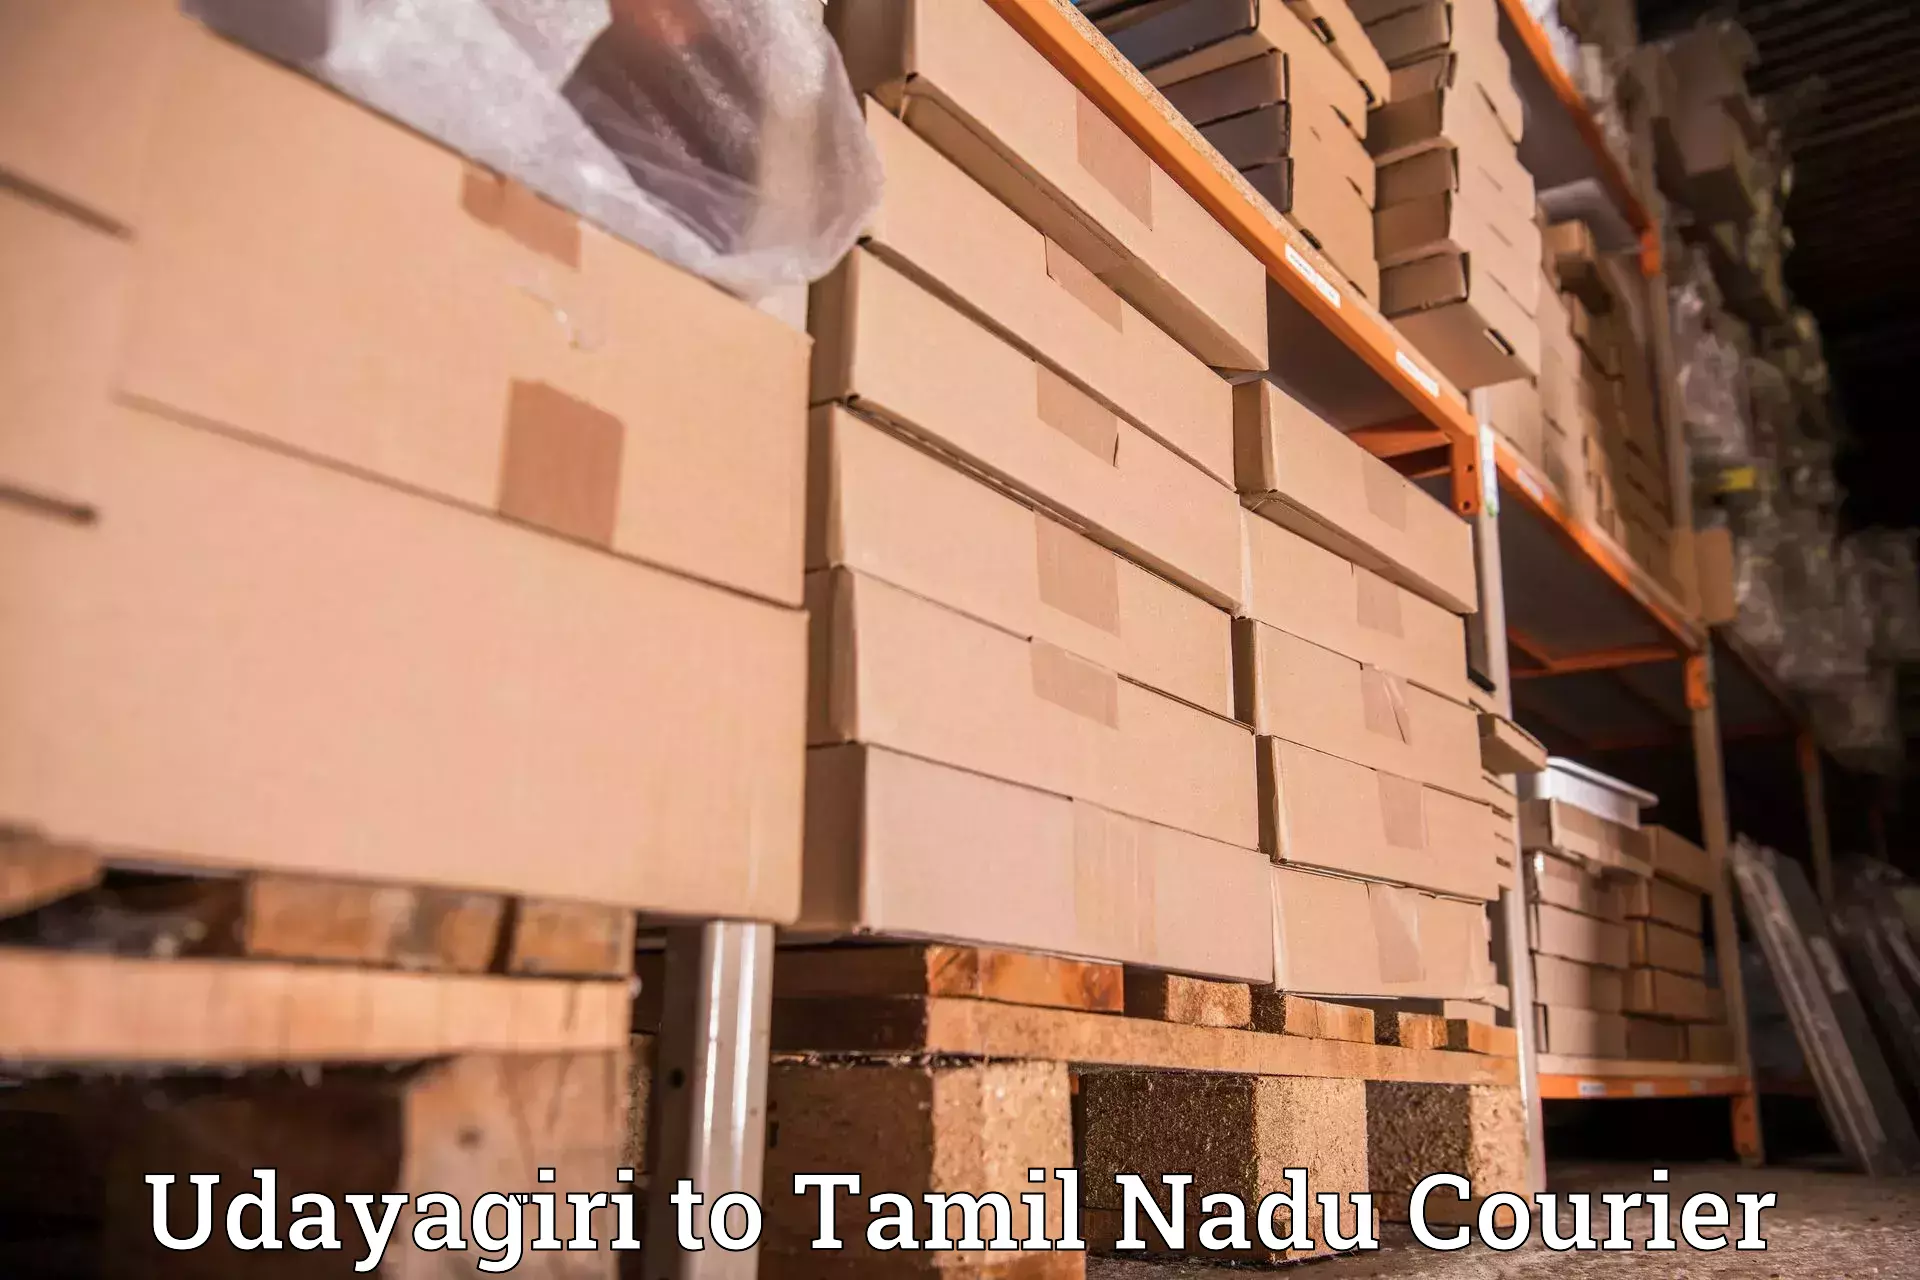 Tech-enabled shipping Udayagiri to Rathinasabapathy Puram